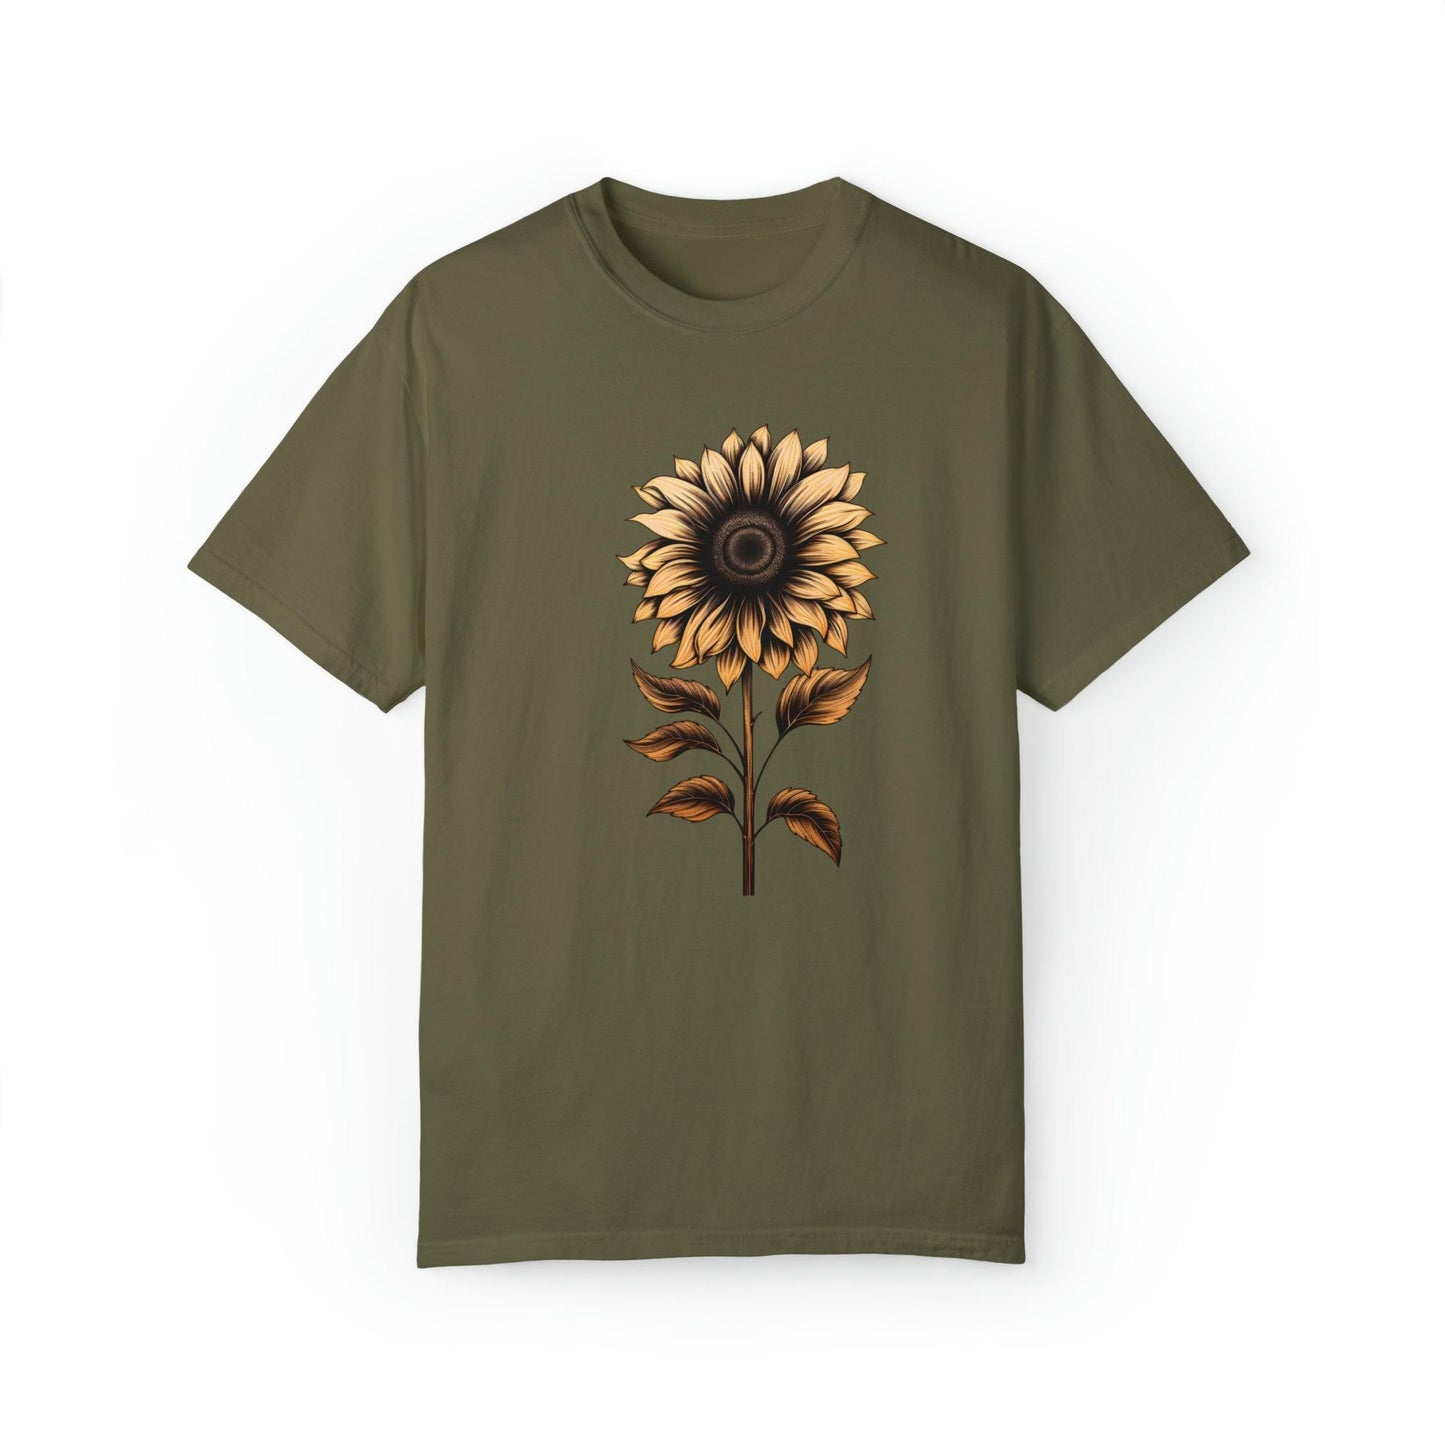 Vintage Sunflower Shirt Flower Shirt Aesthetic, Floral Graphic Tee Floral Shirt Flower T-shirt, Vintage Wild Flower Shirt Vintage Flower Shirt,